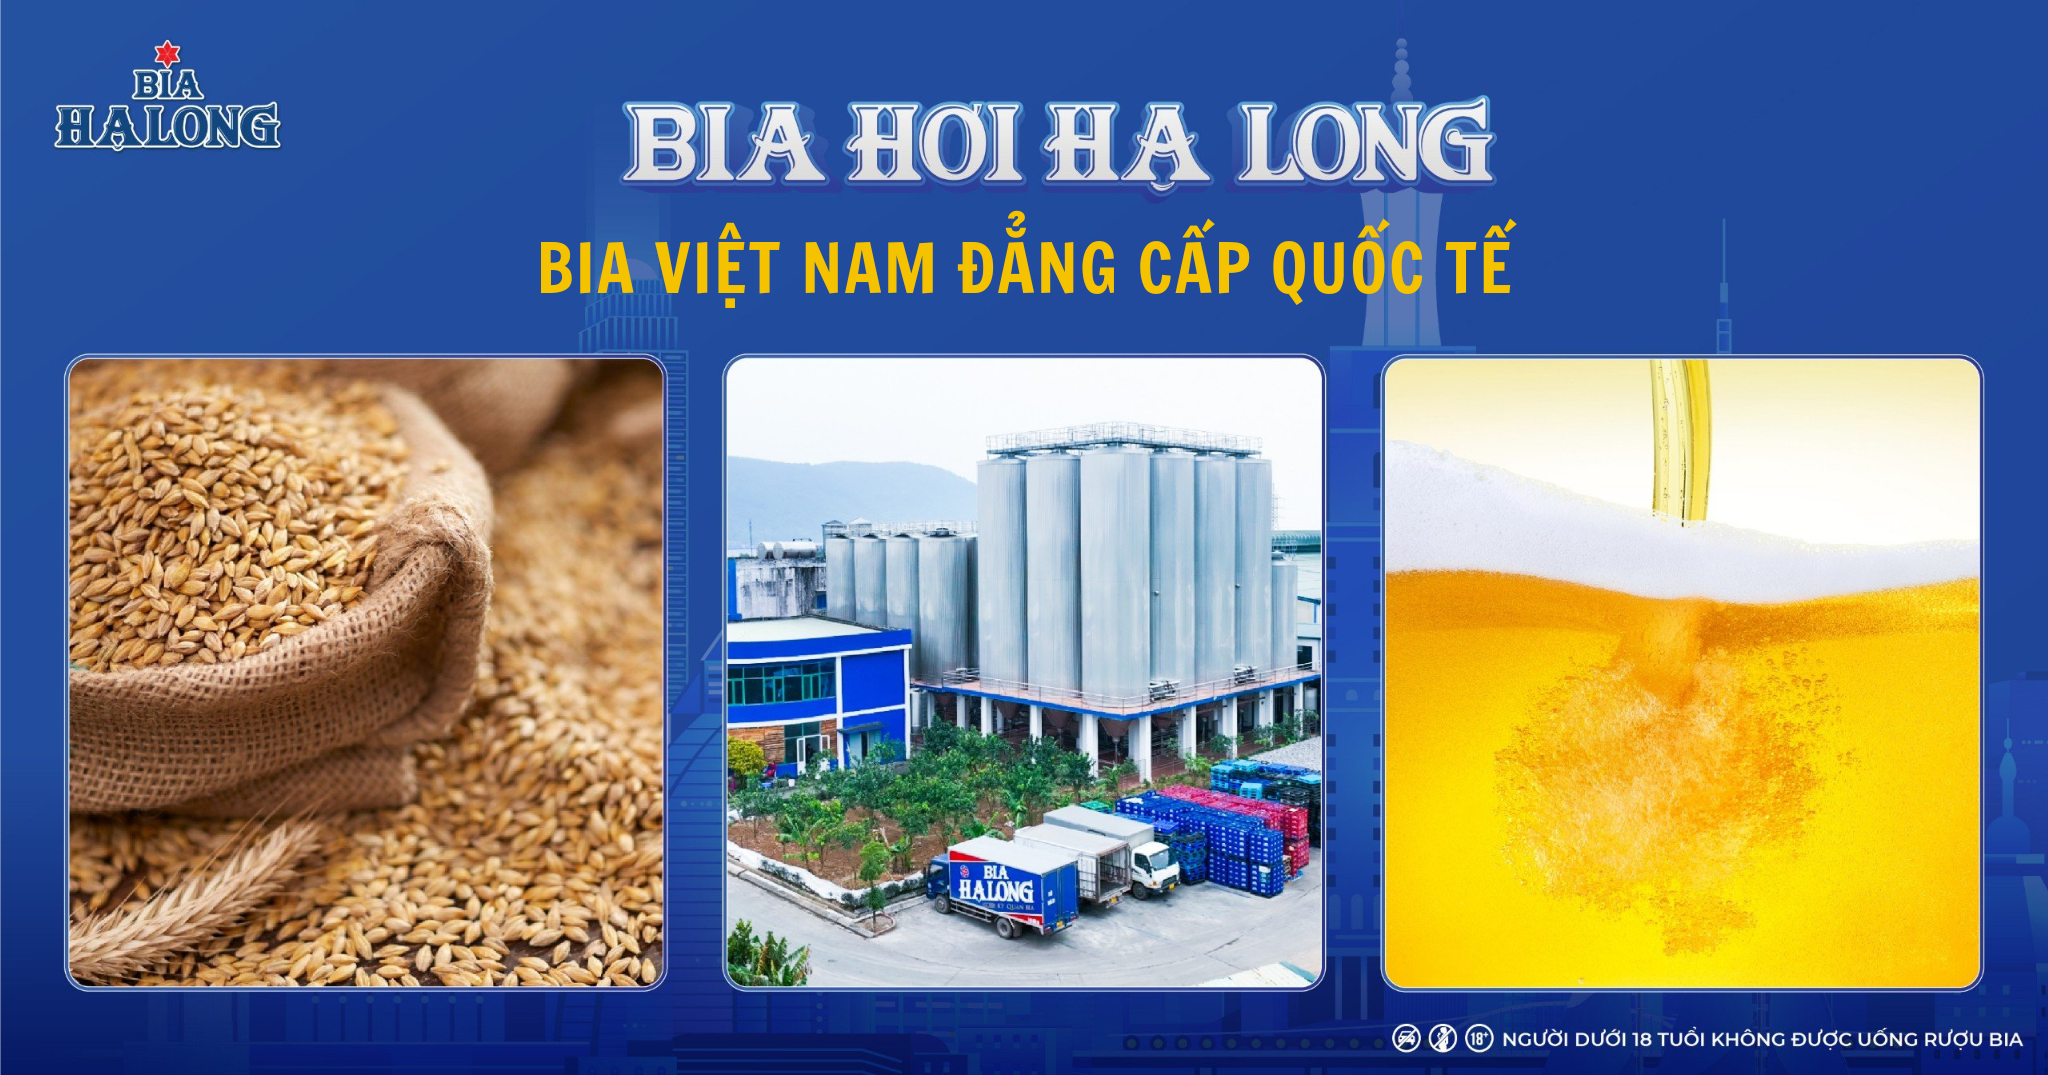 Bia Hơi Hạ Long - tự hào là thức bia của người Việt đạt đẳng cấp quốc tế!